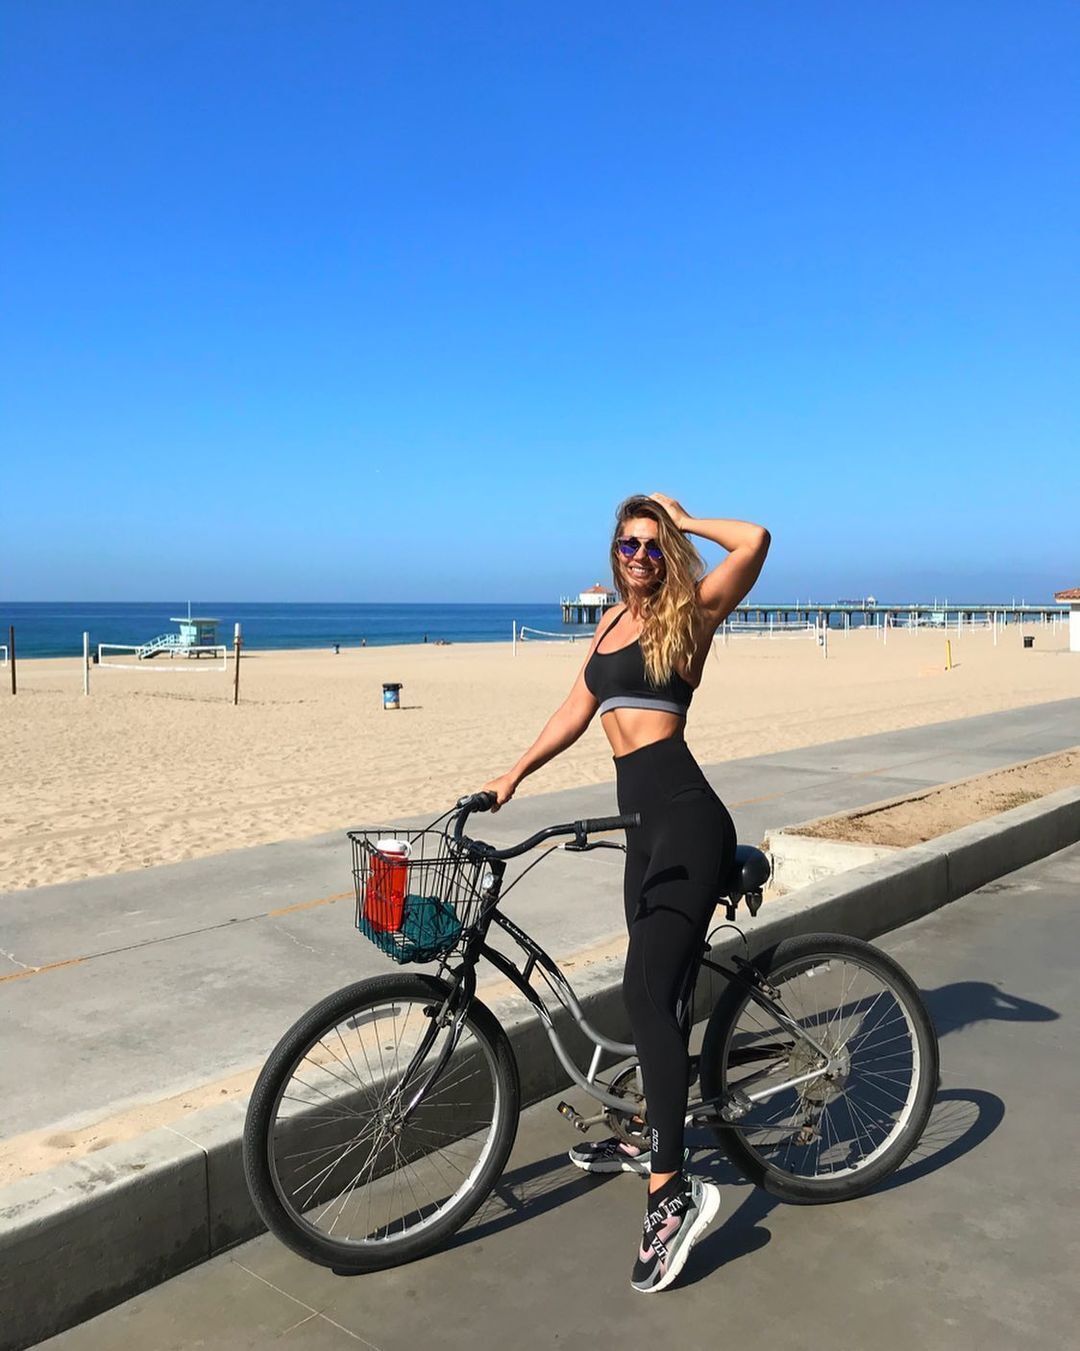 Юлия Ефимова любит кататься на велосипеде